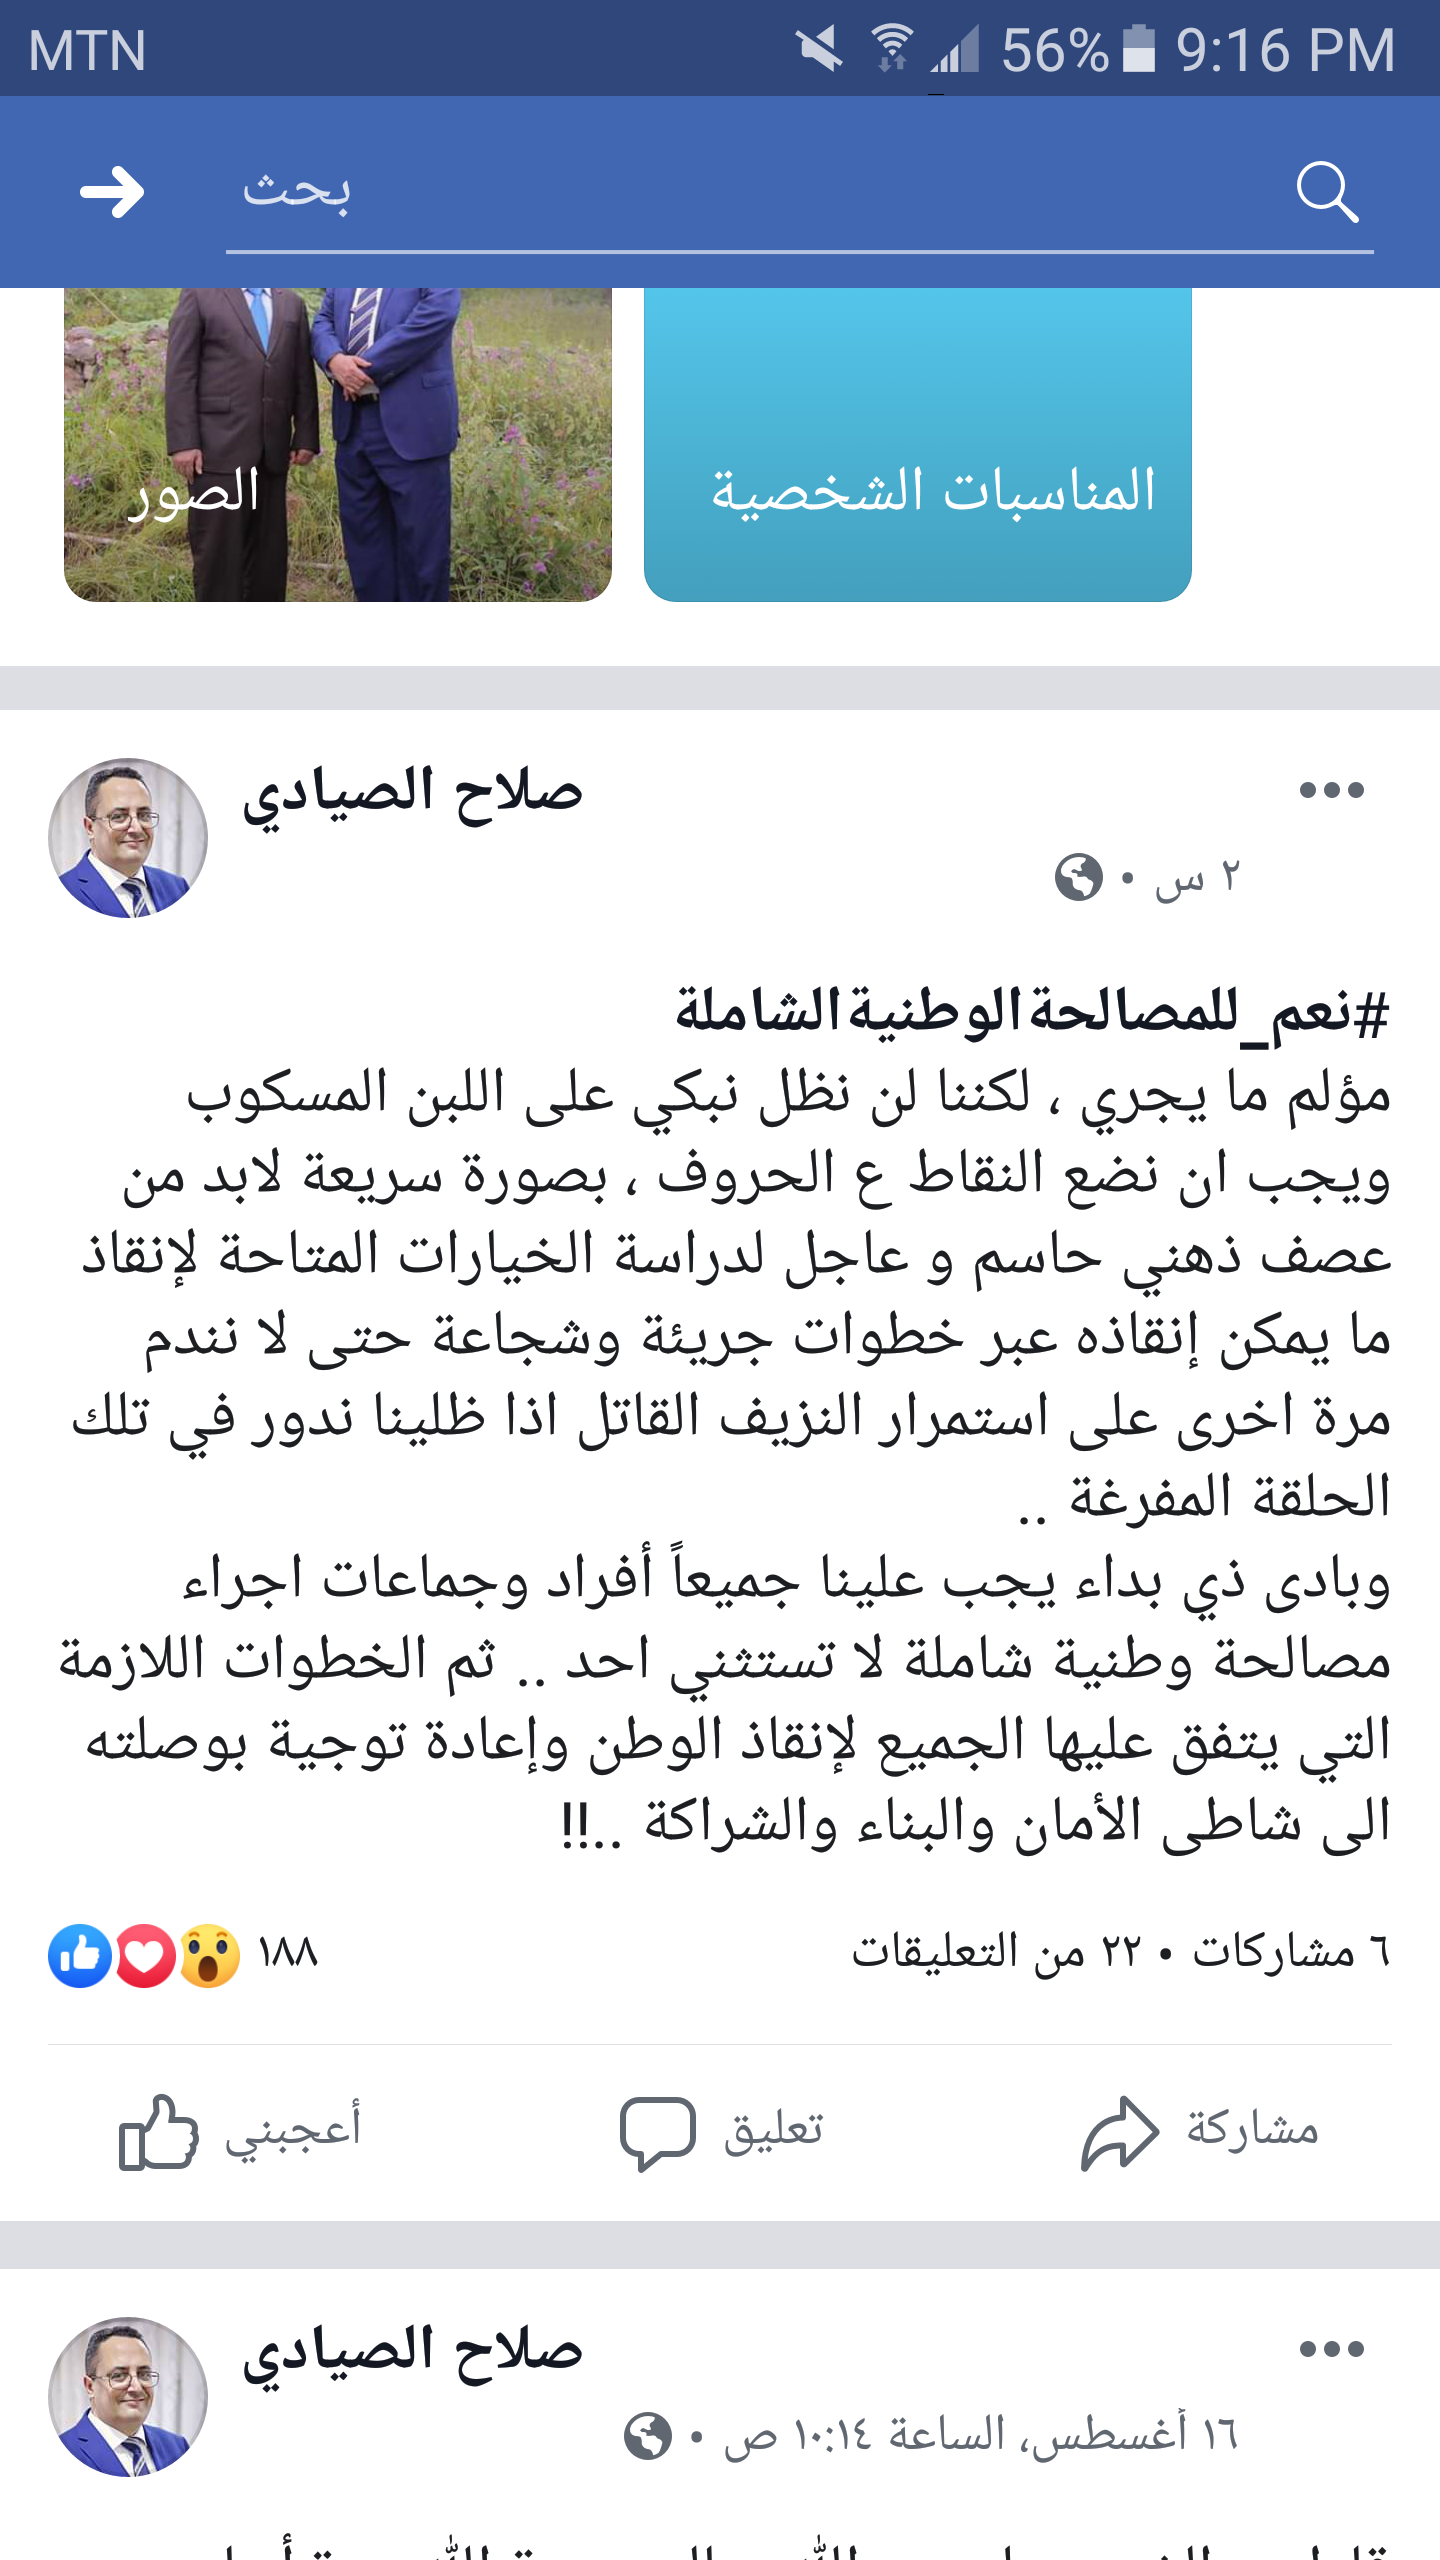 وزير بحكومة هادي يدعو للمصالحه مع الحوثيين قبل فوات الاوان...( الاسم + الصوره )